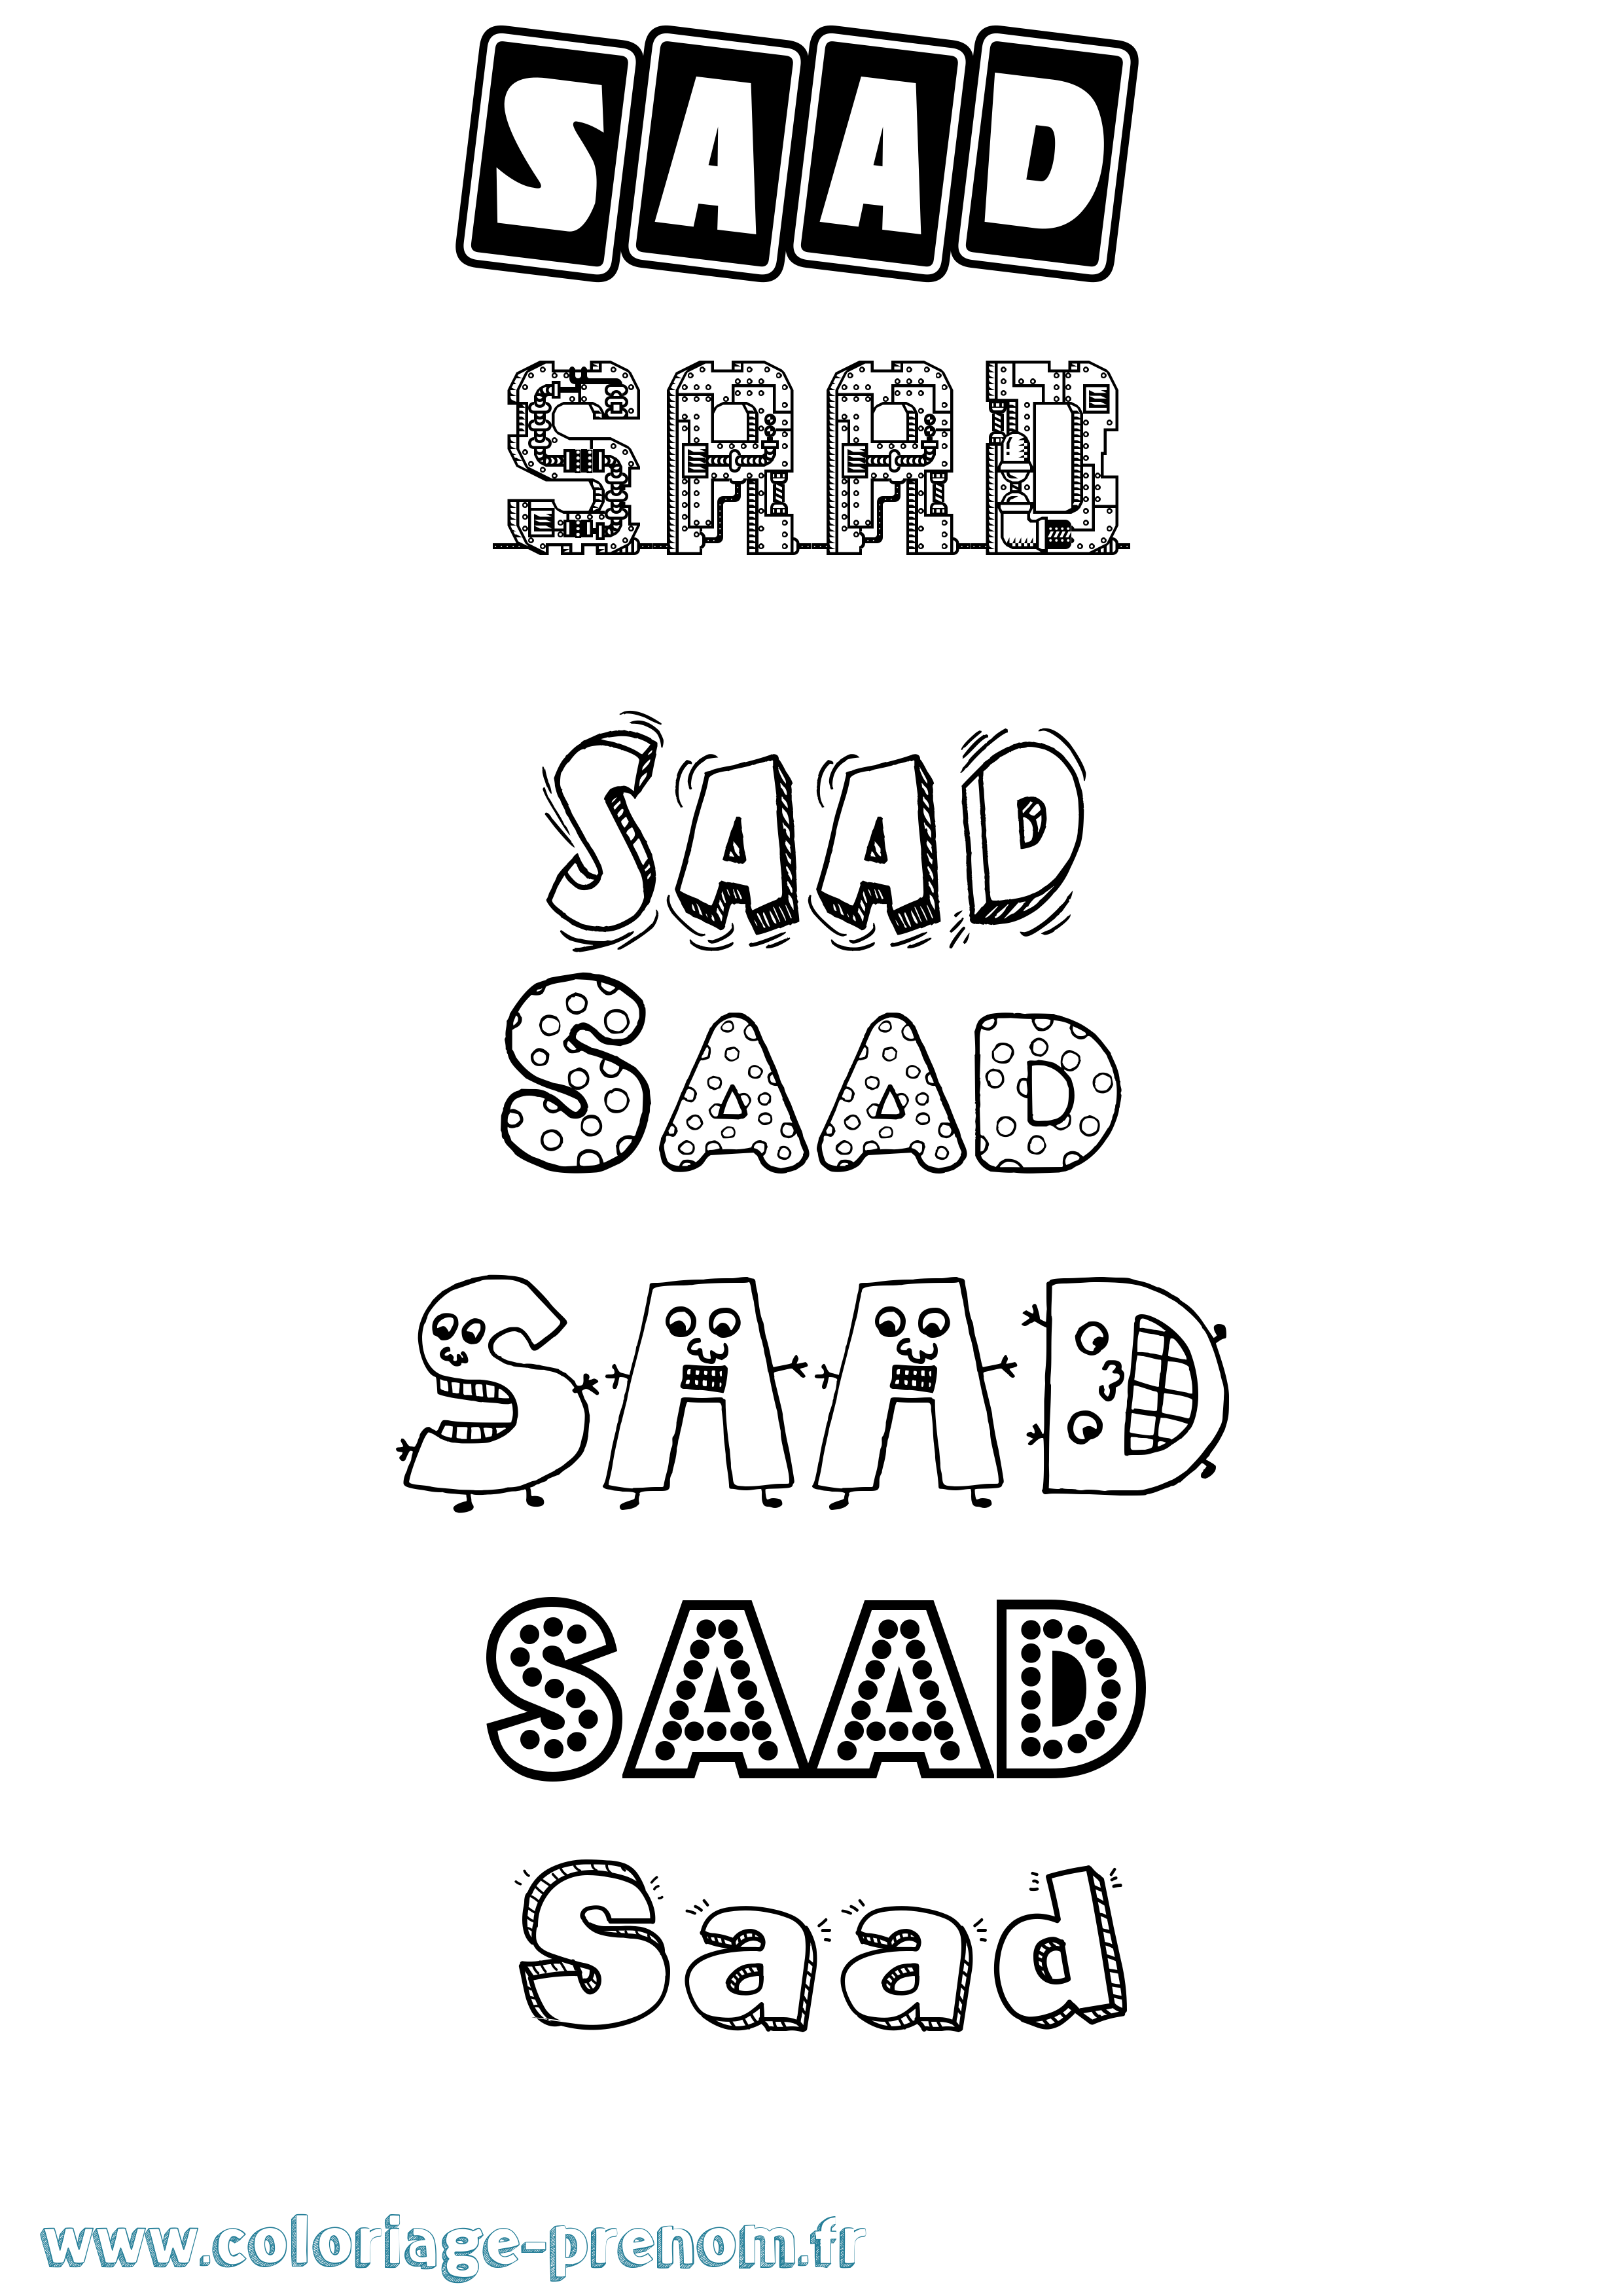 Coloriage prénom Saad Fun